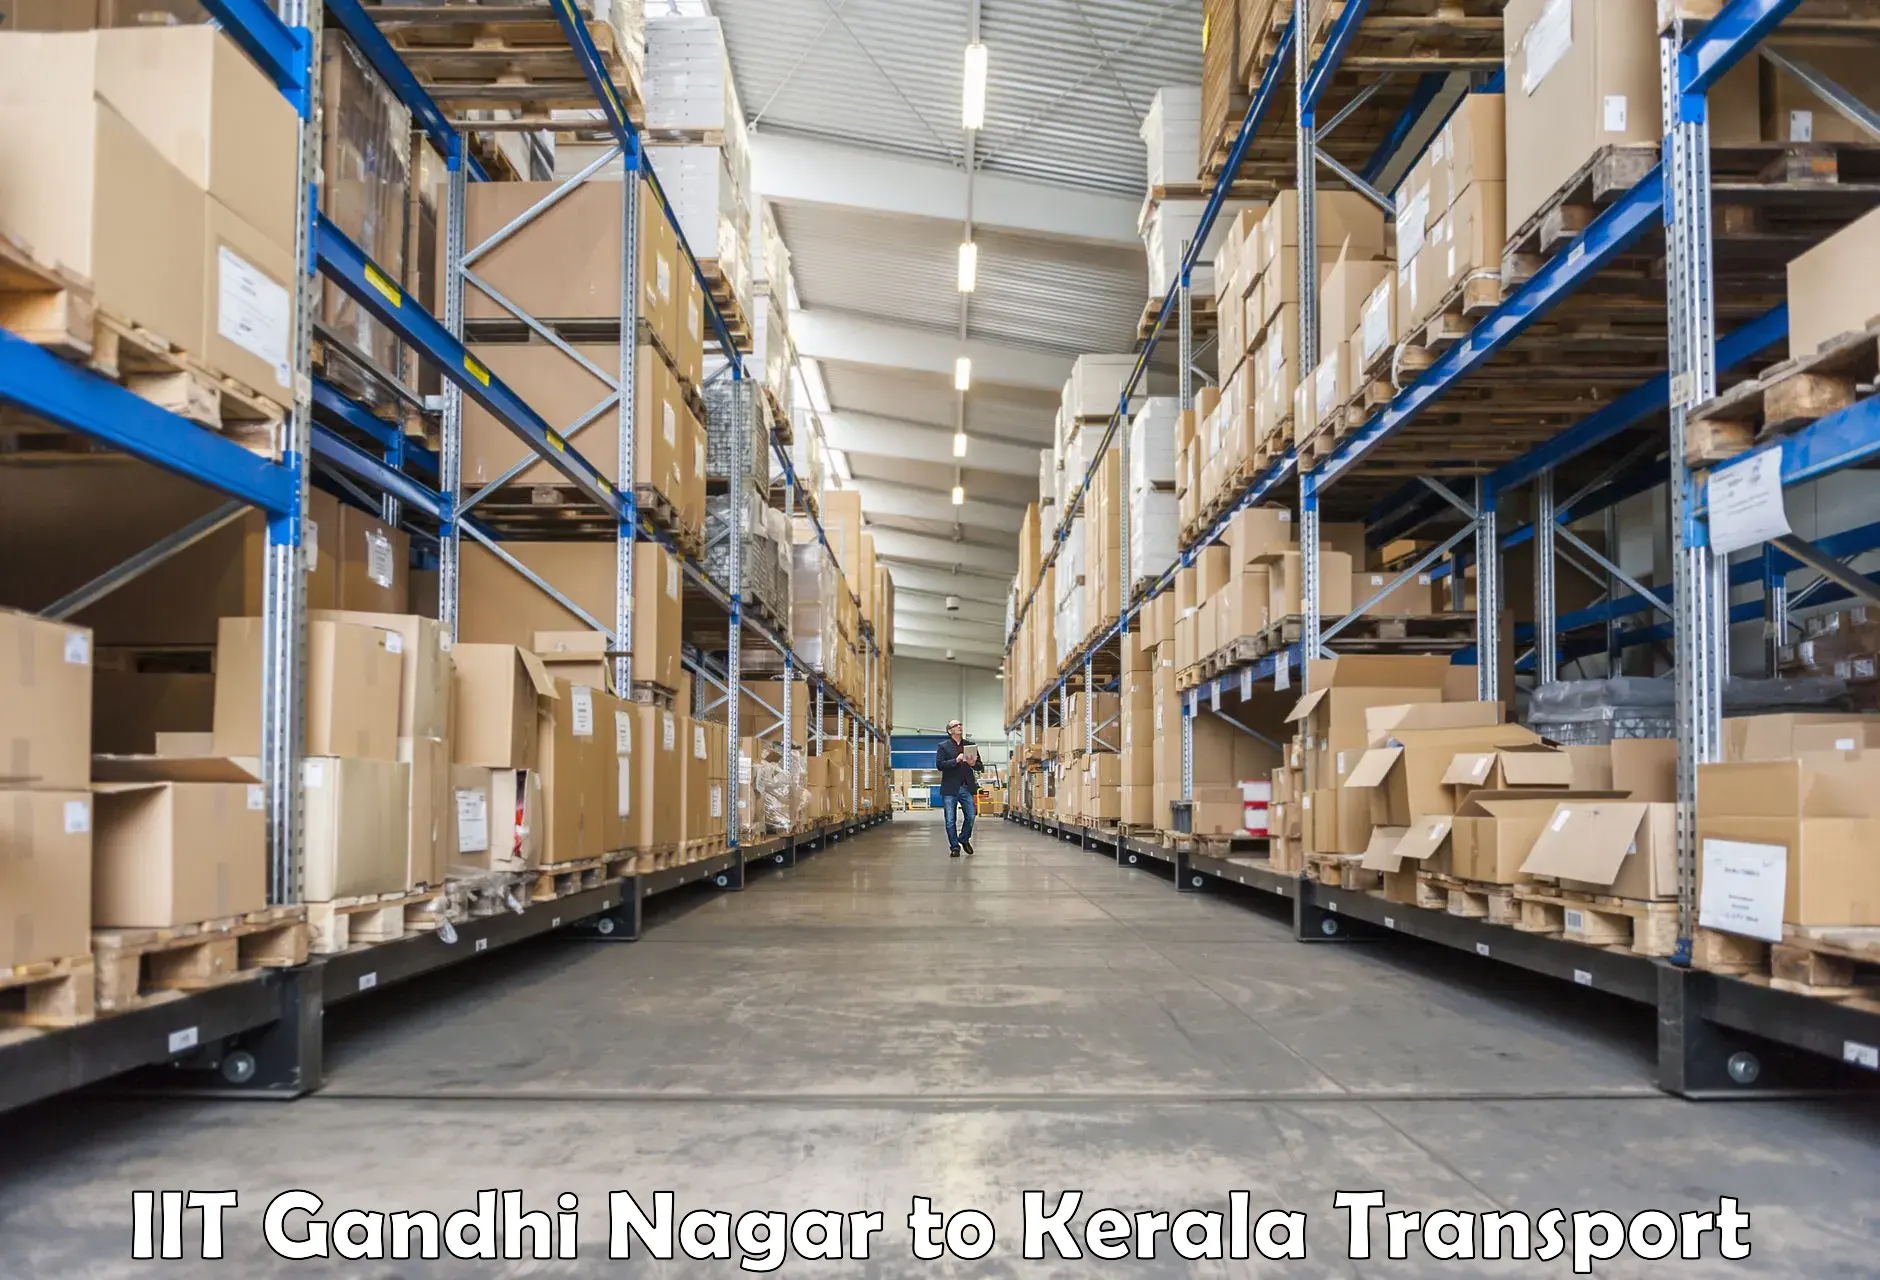 Pick up transport service IIT Gandhi Nagar to Manjeshwar